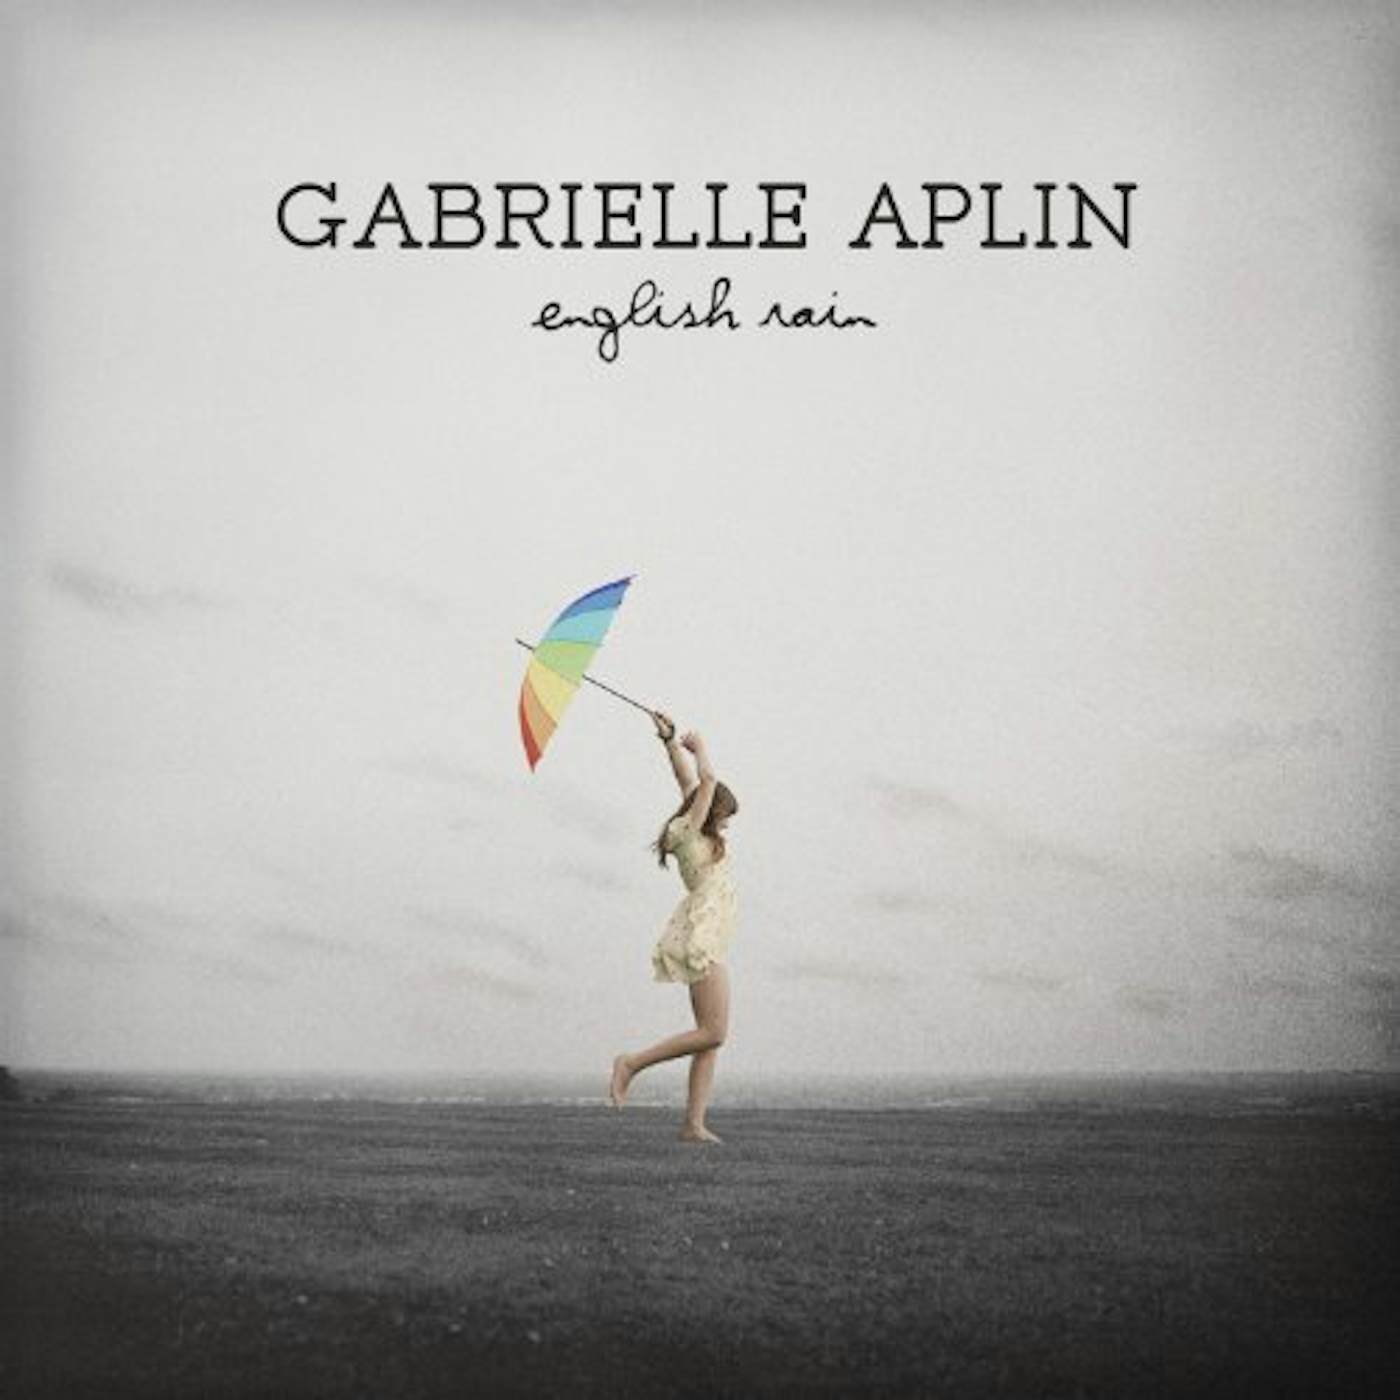 Gabrielle Aplin English Rain Vinyl Record